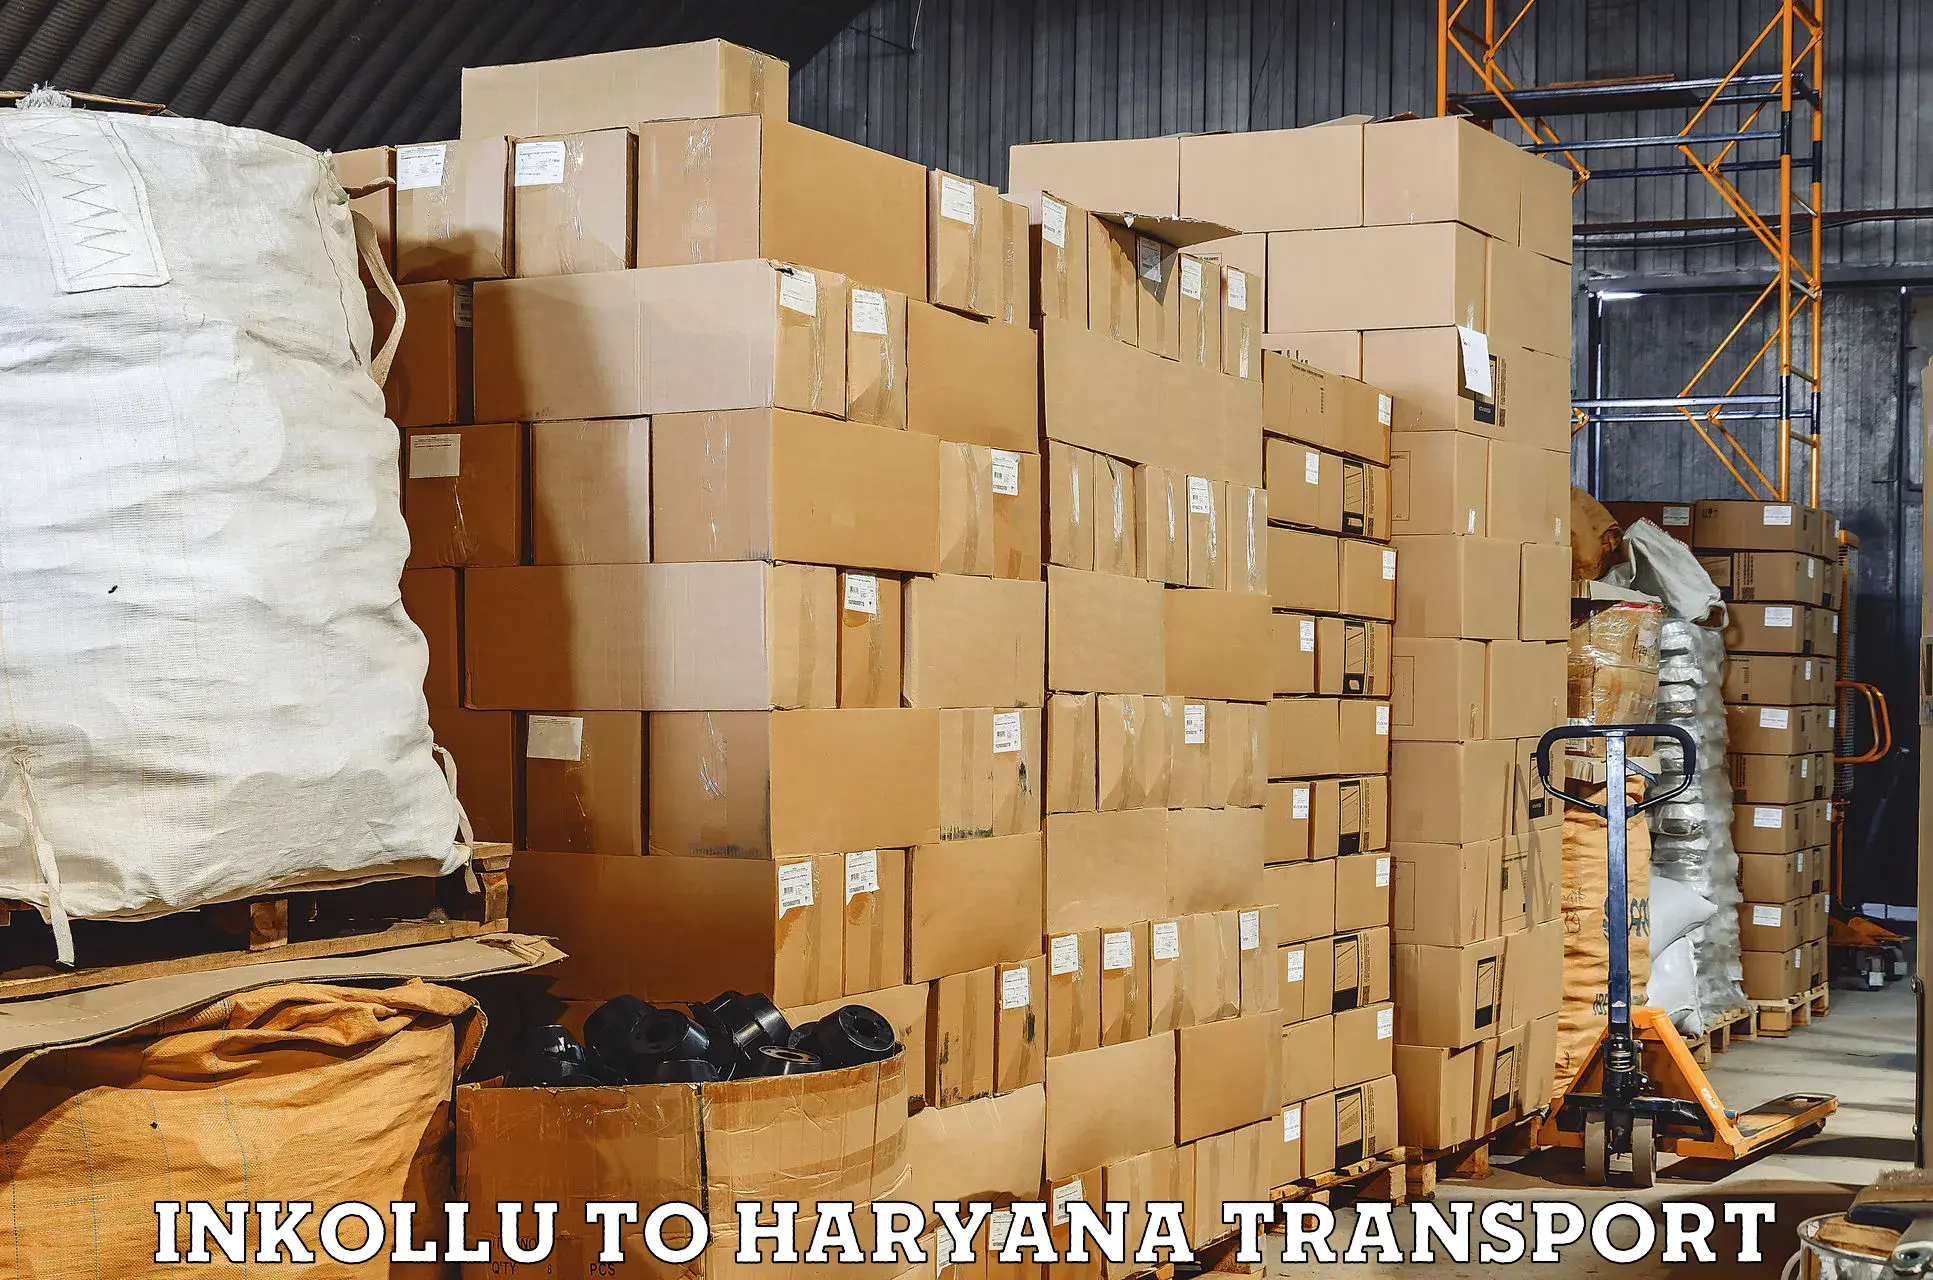 Two wheeler parcel service Inkollu to Haryana